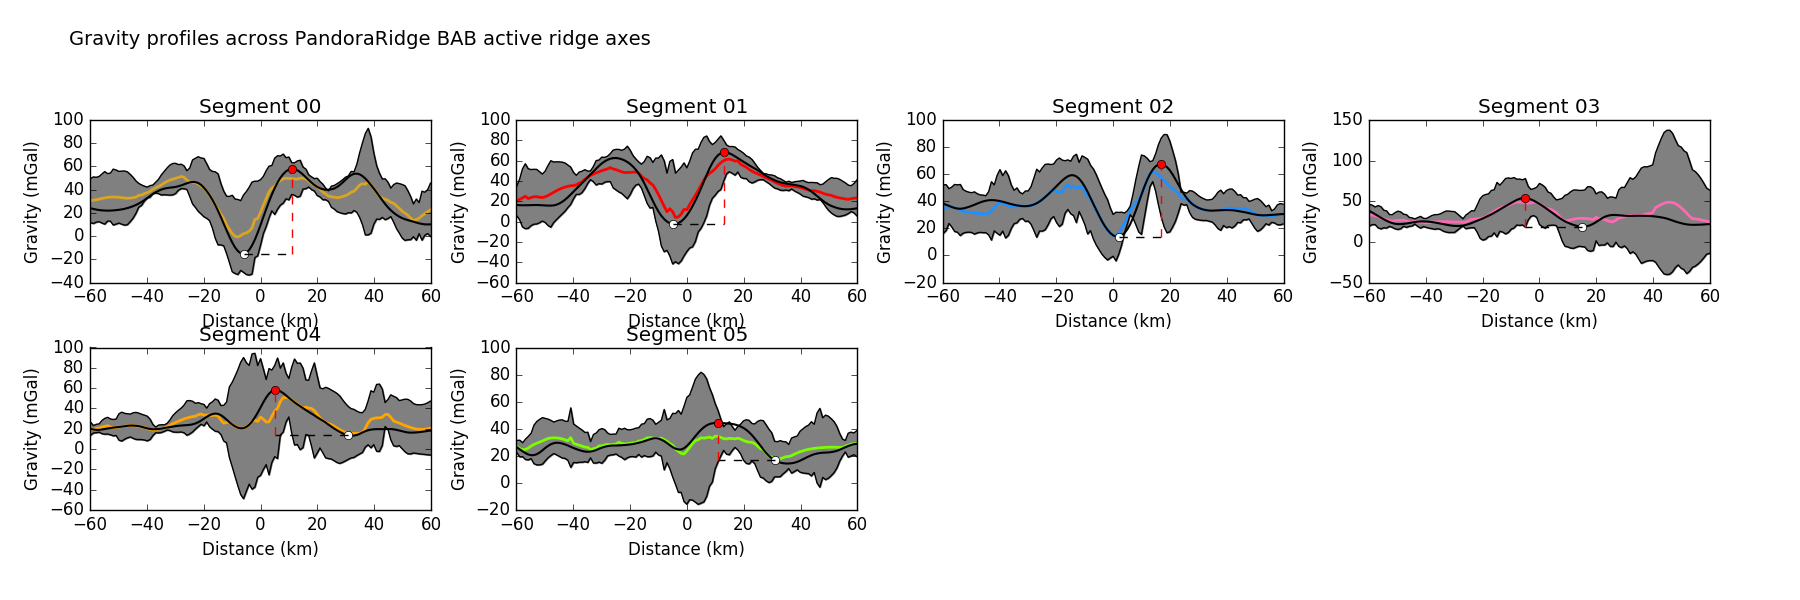 Gravity profiles across the axes of active spreading ridge segments